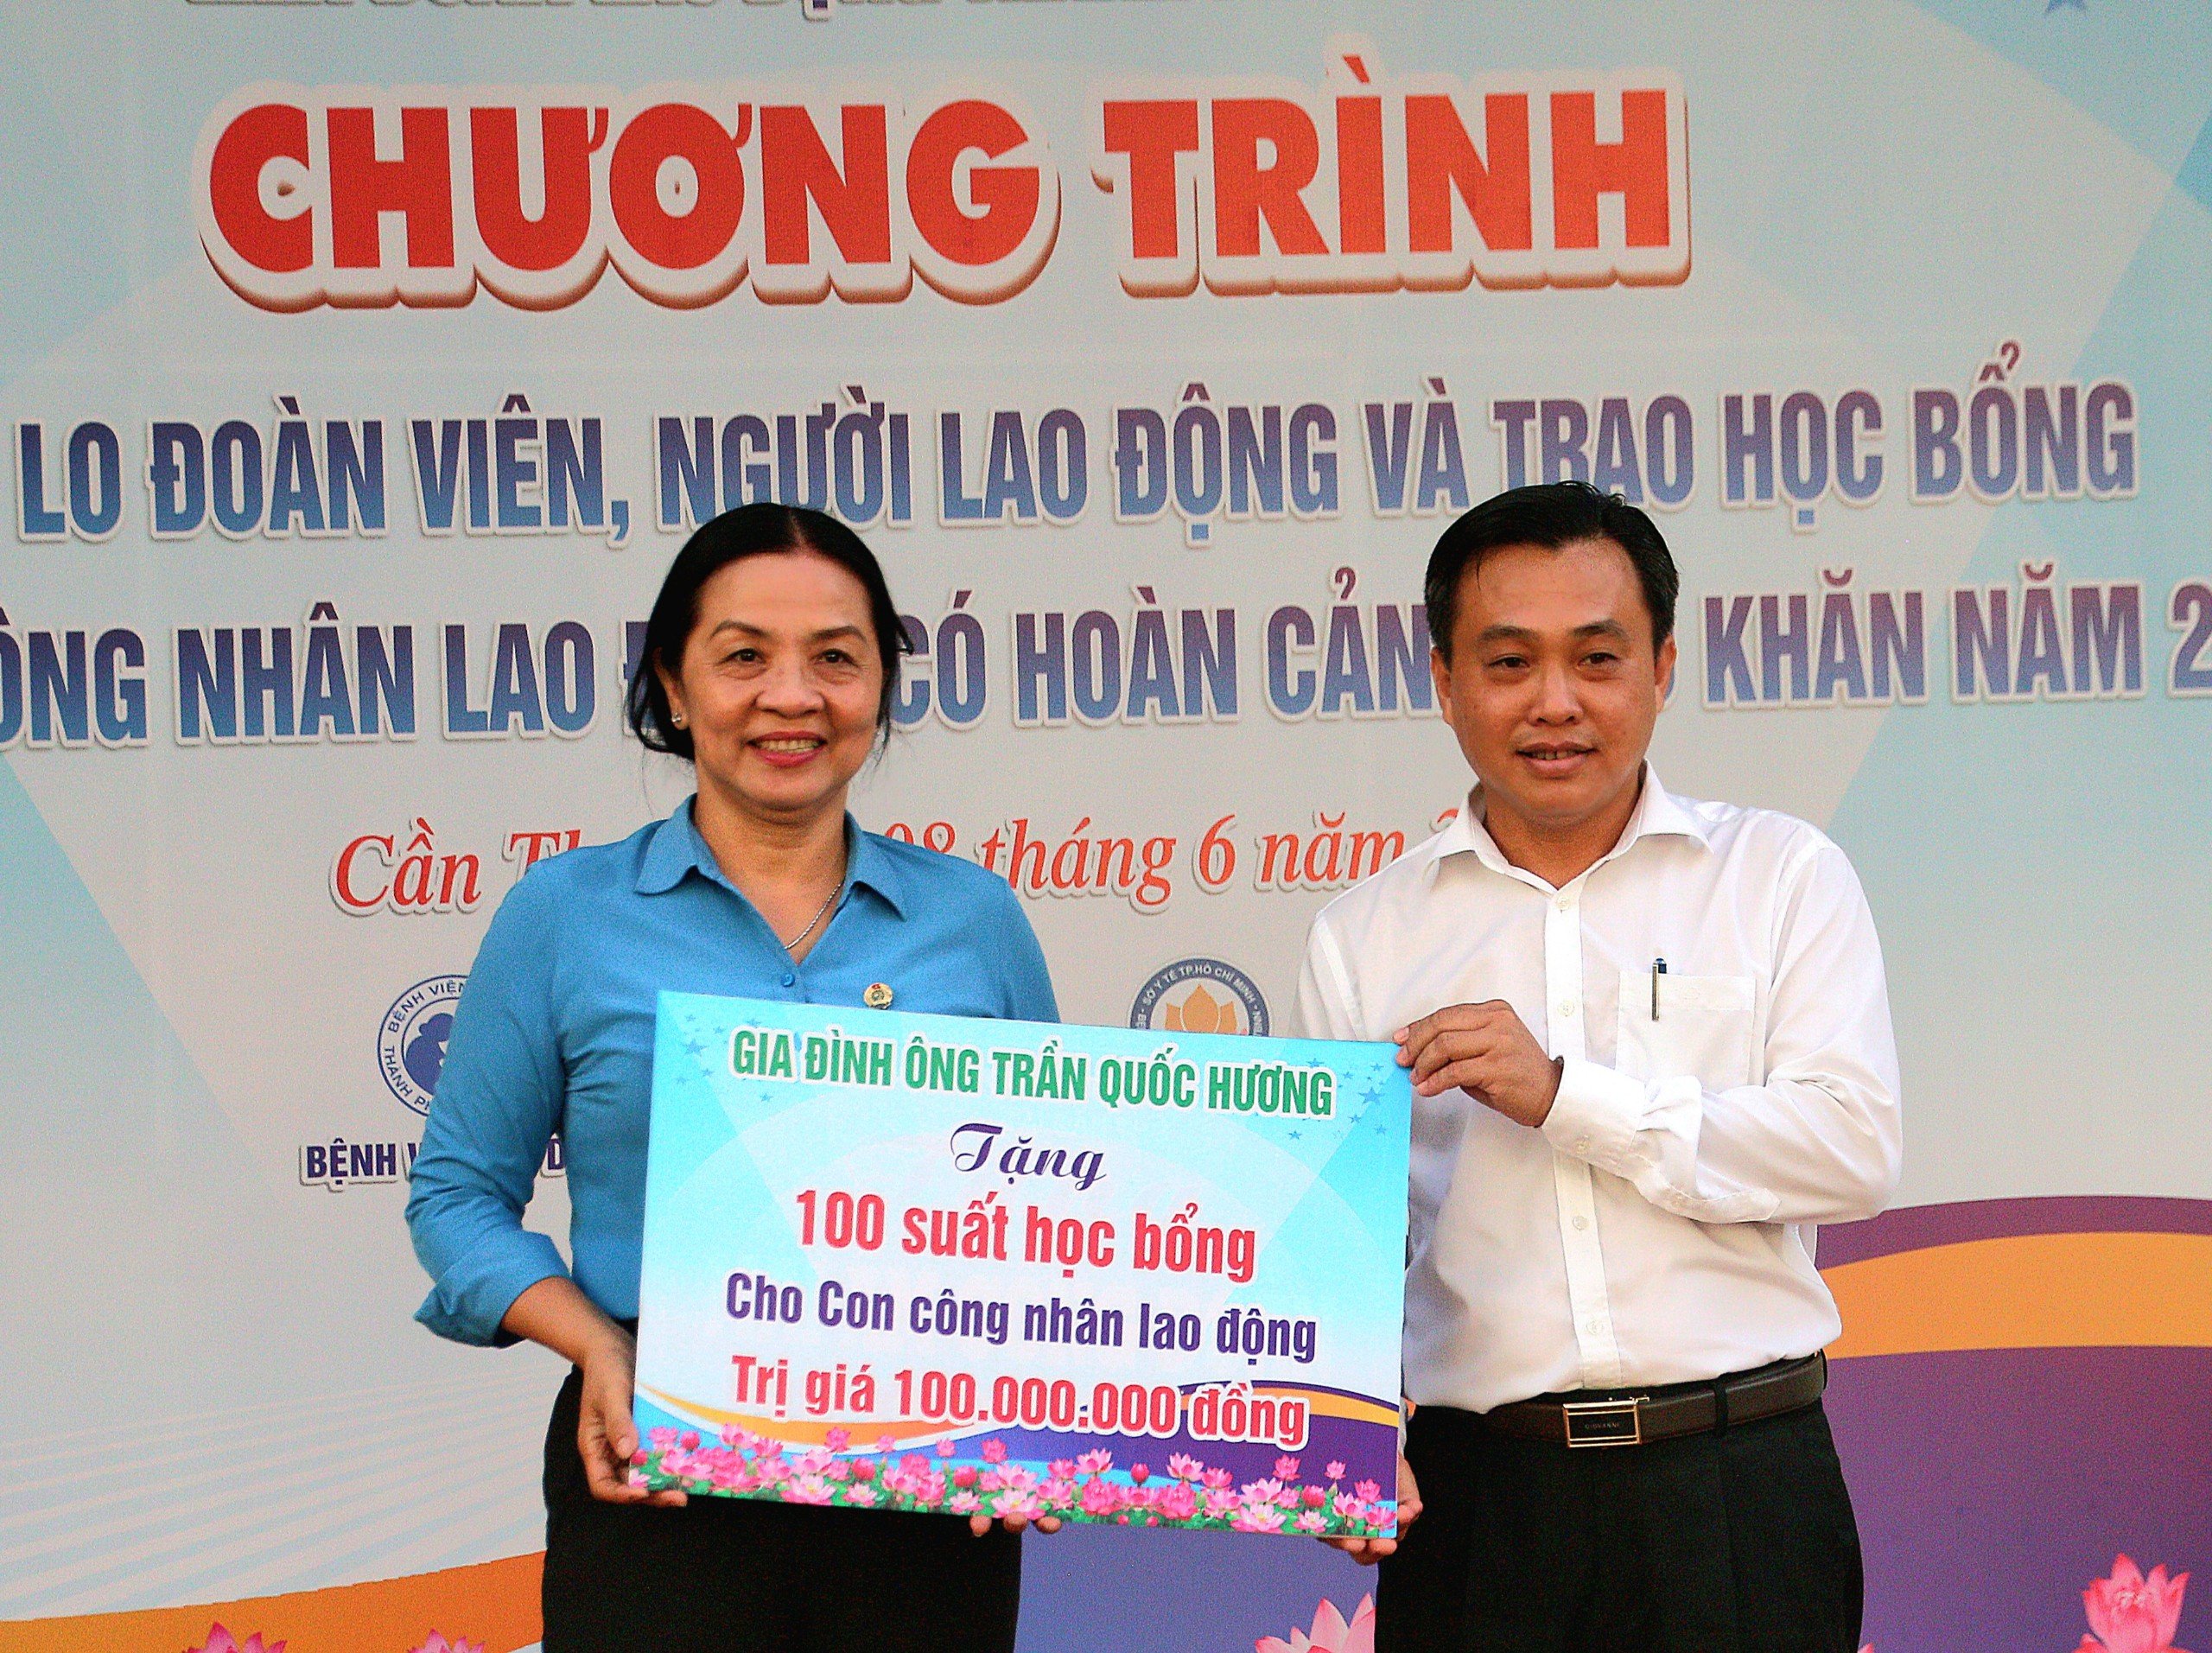 Ông Nguyễn Hồng Hà - Phó trưởng Ban Dân vận Thành ủy Cần Thơ đại diện Gia đình ông Trần Quốc Hương trao tặng 100 suất học bổng cho con công nhân lao động trị giá 100 triệu đồng.